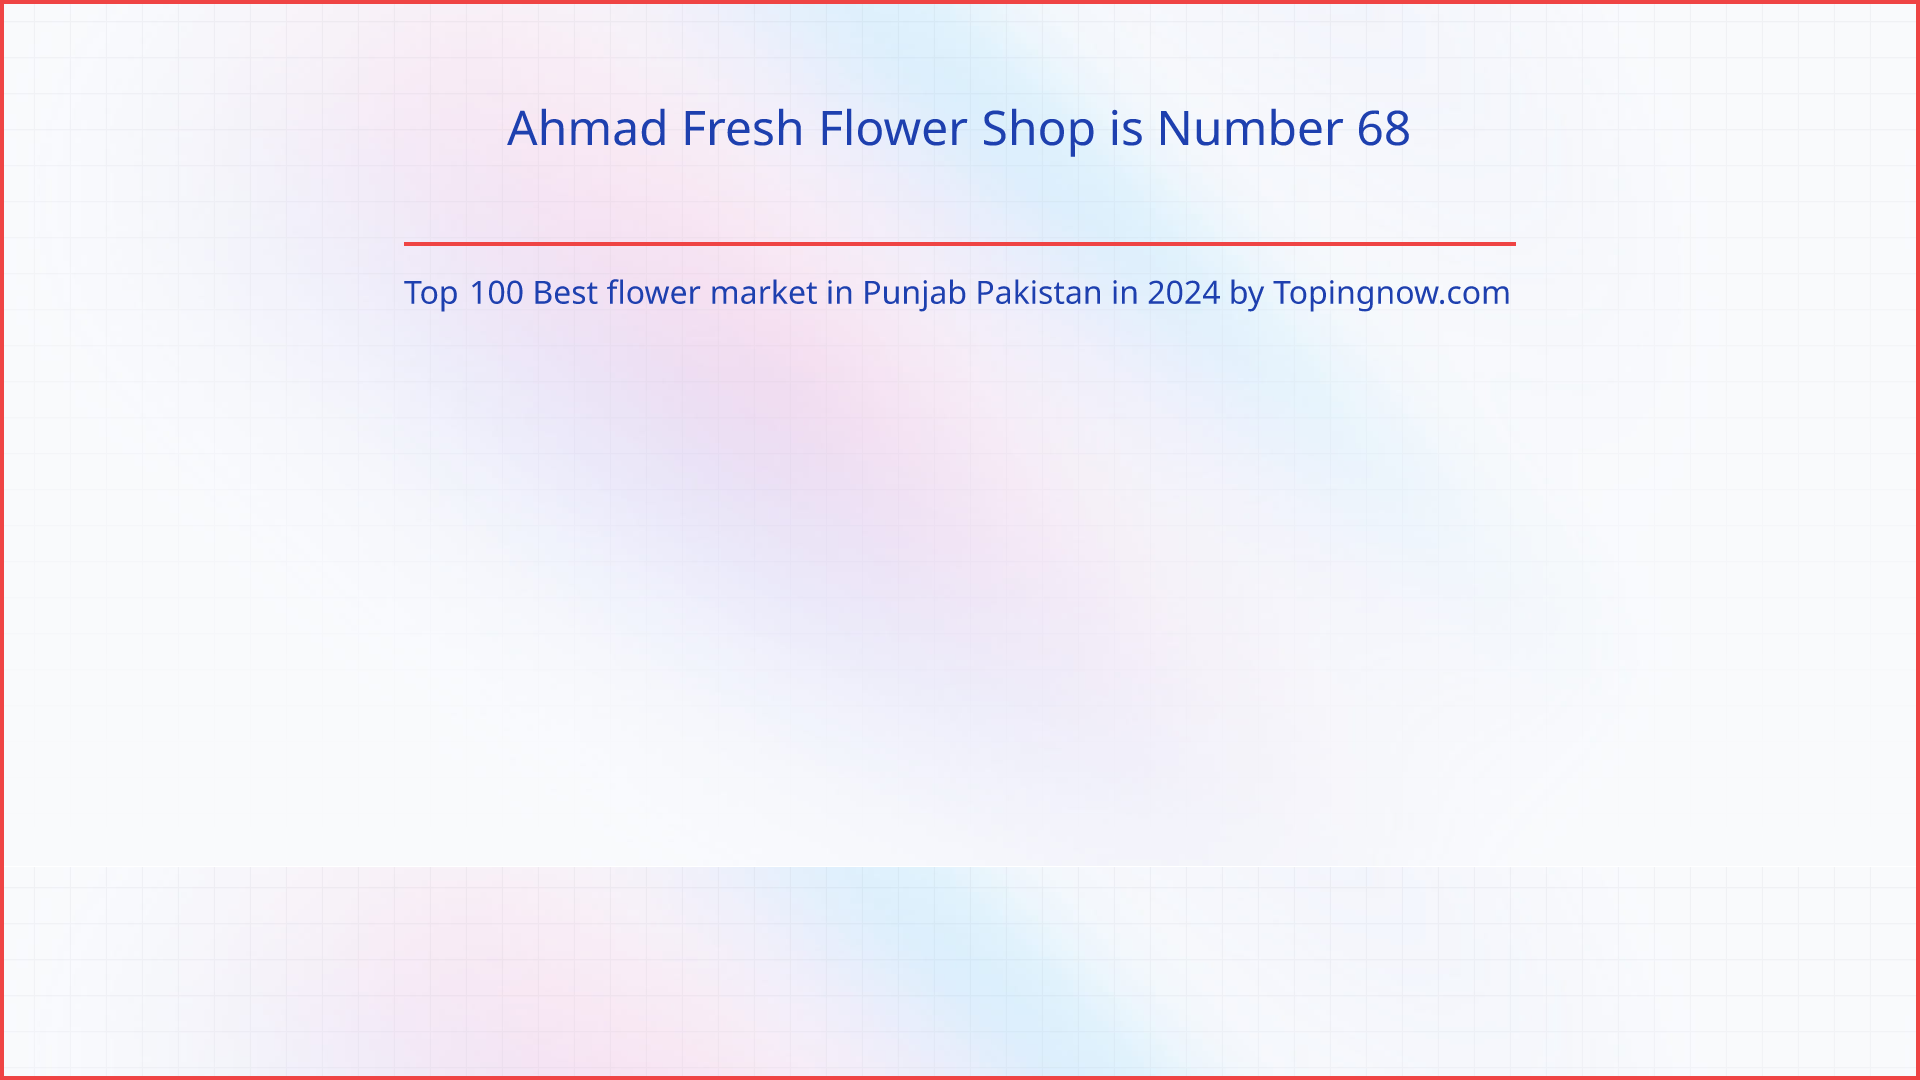 Ahmad Fresh Flower Shop: Top 100 Best flower market in Punjab Pakistan in 2024